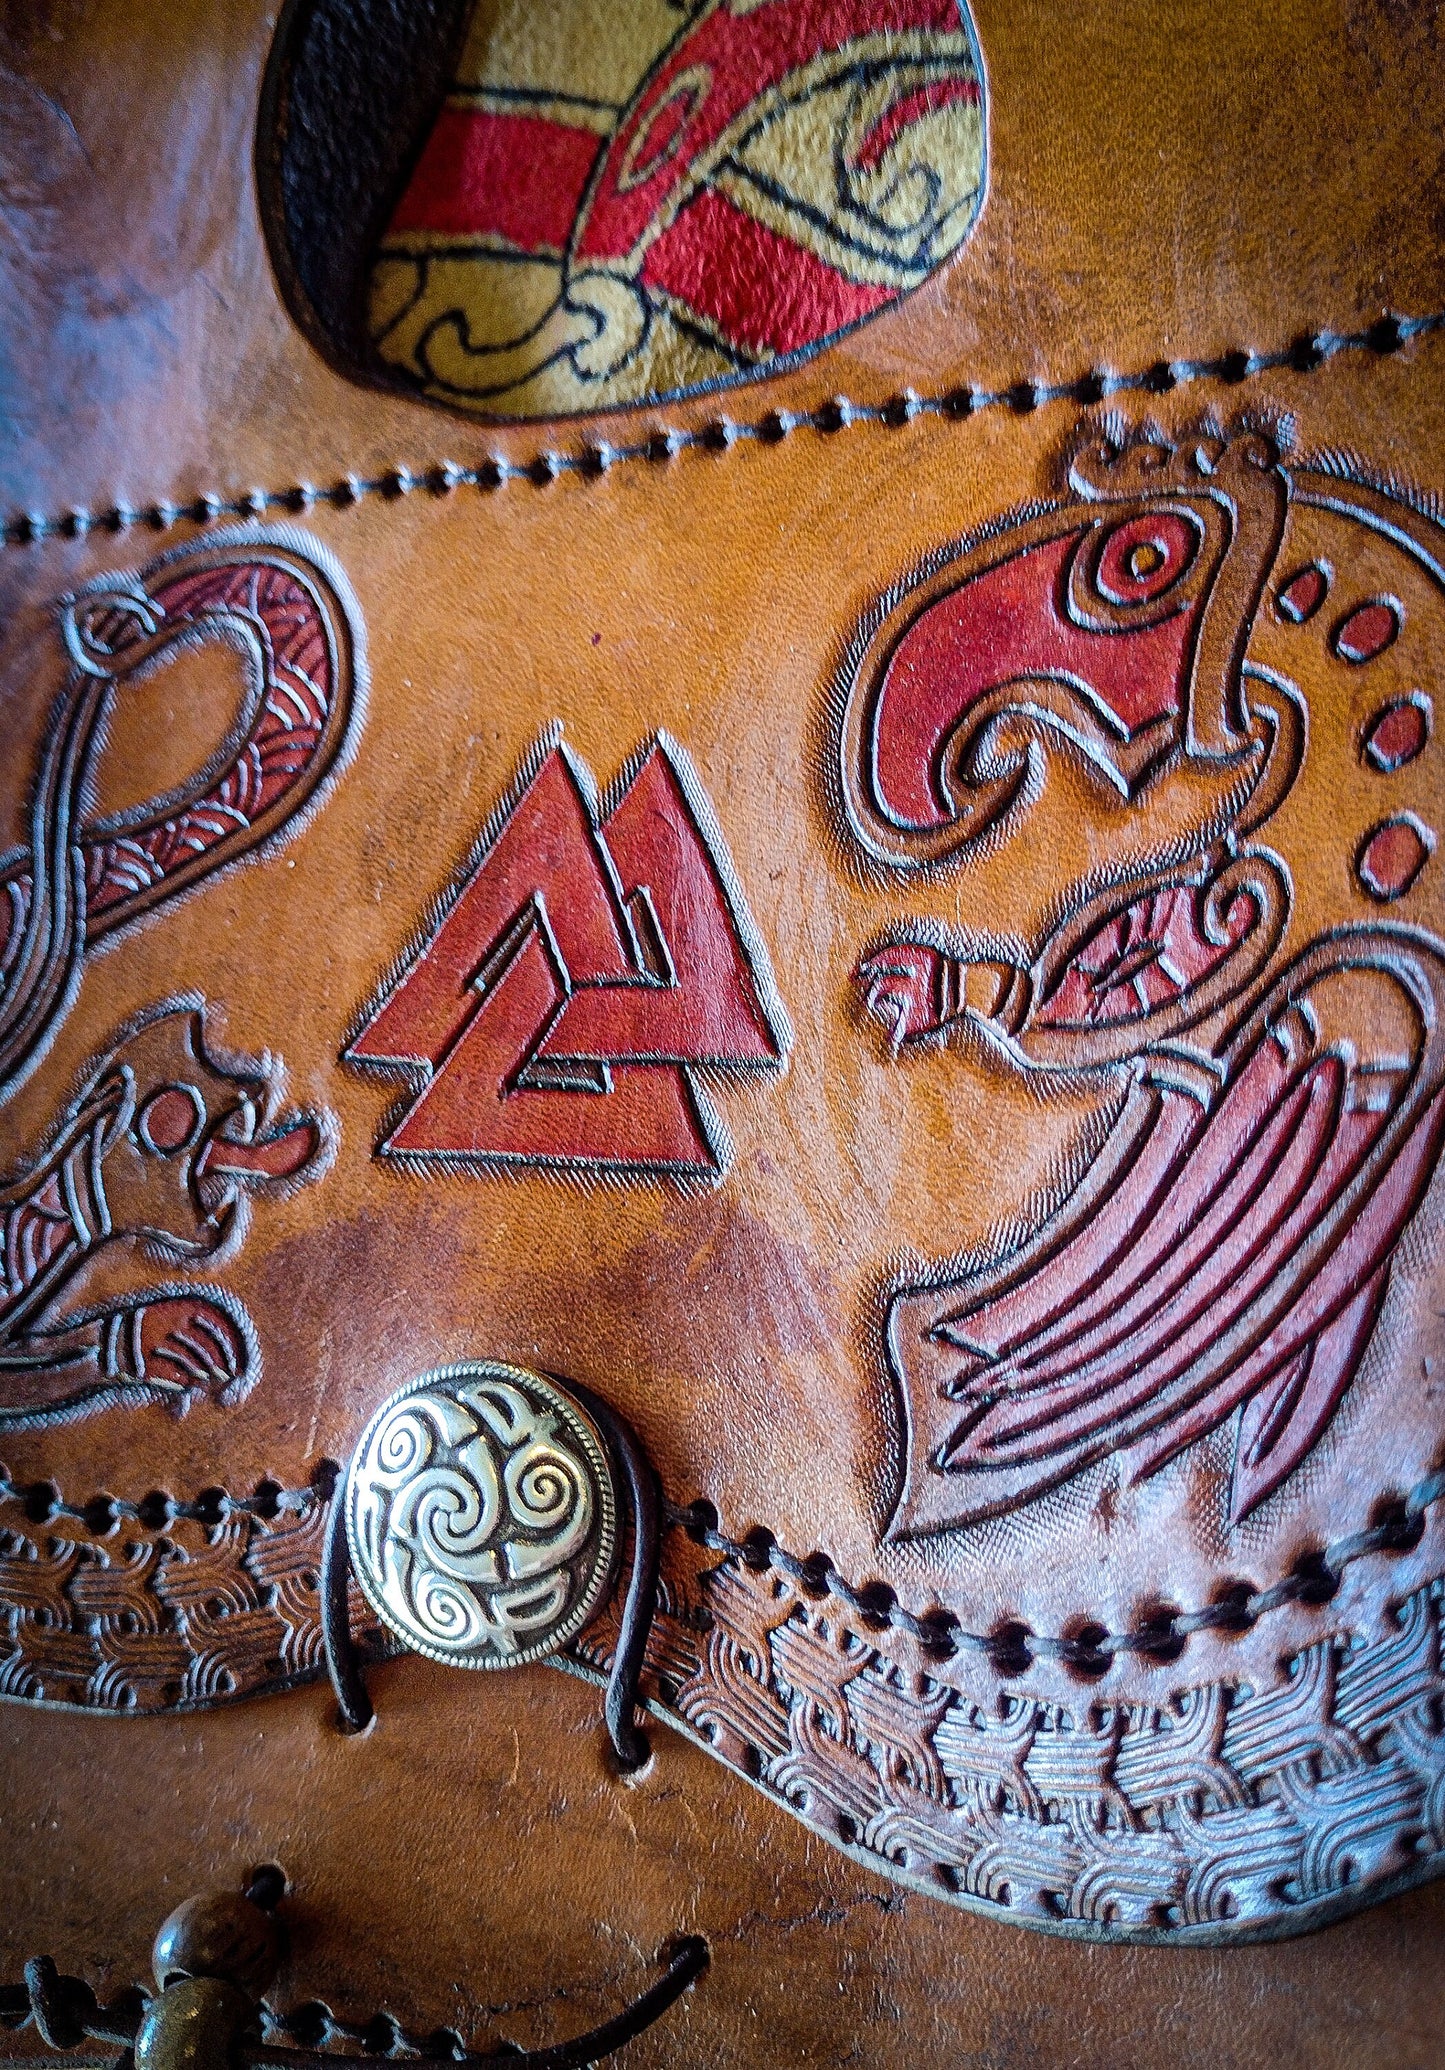 Snake and Raven - Medieval Belt Bag